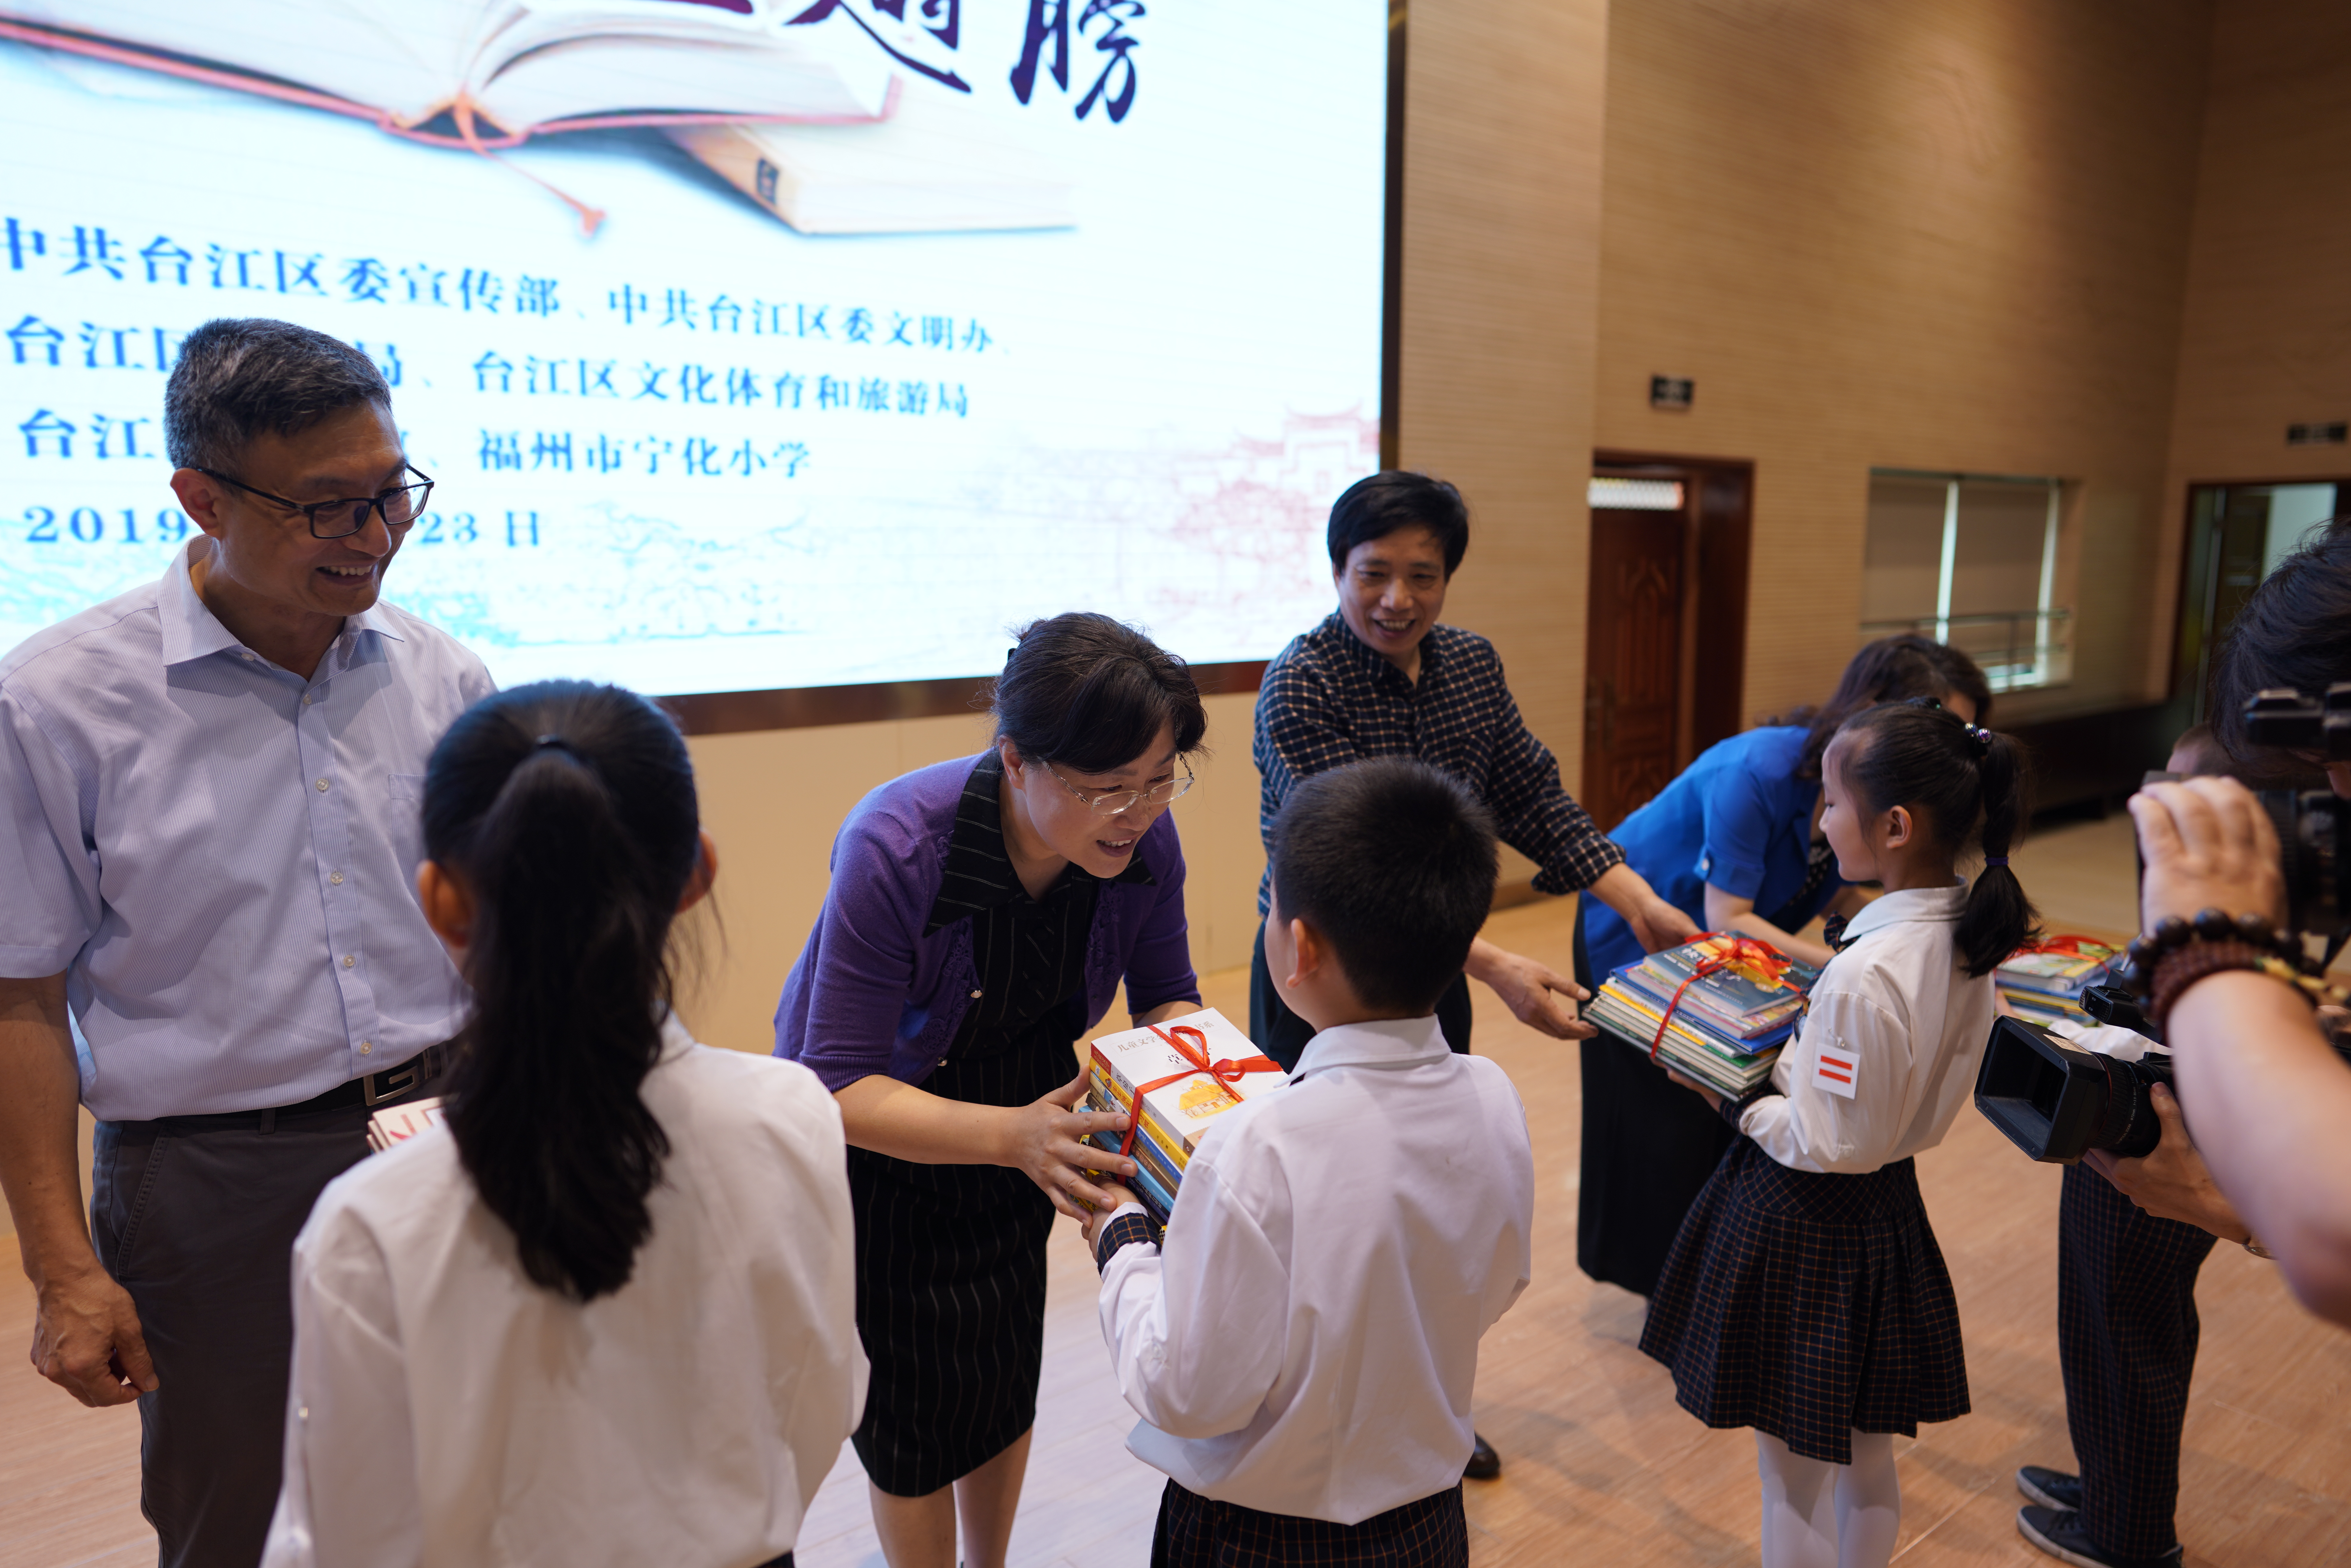 读书创造卓越 知识成就梦想—台江区举办2019年世界读书日主题活动